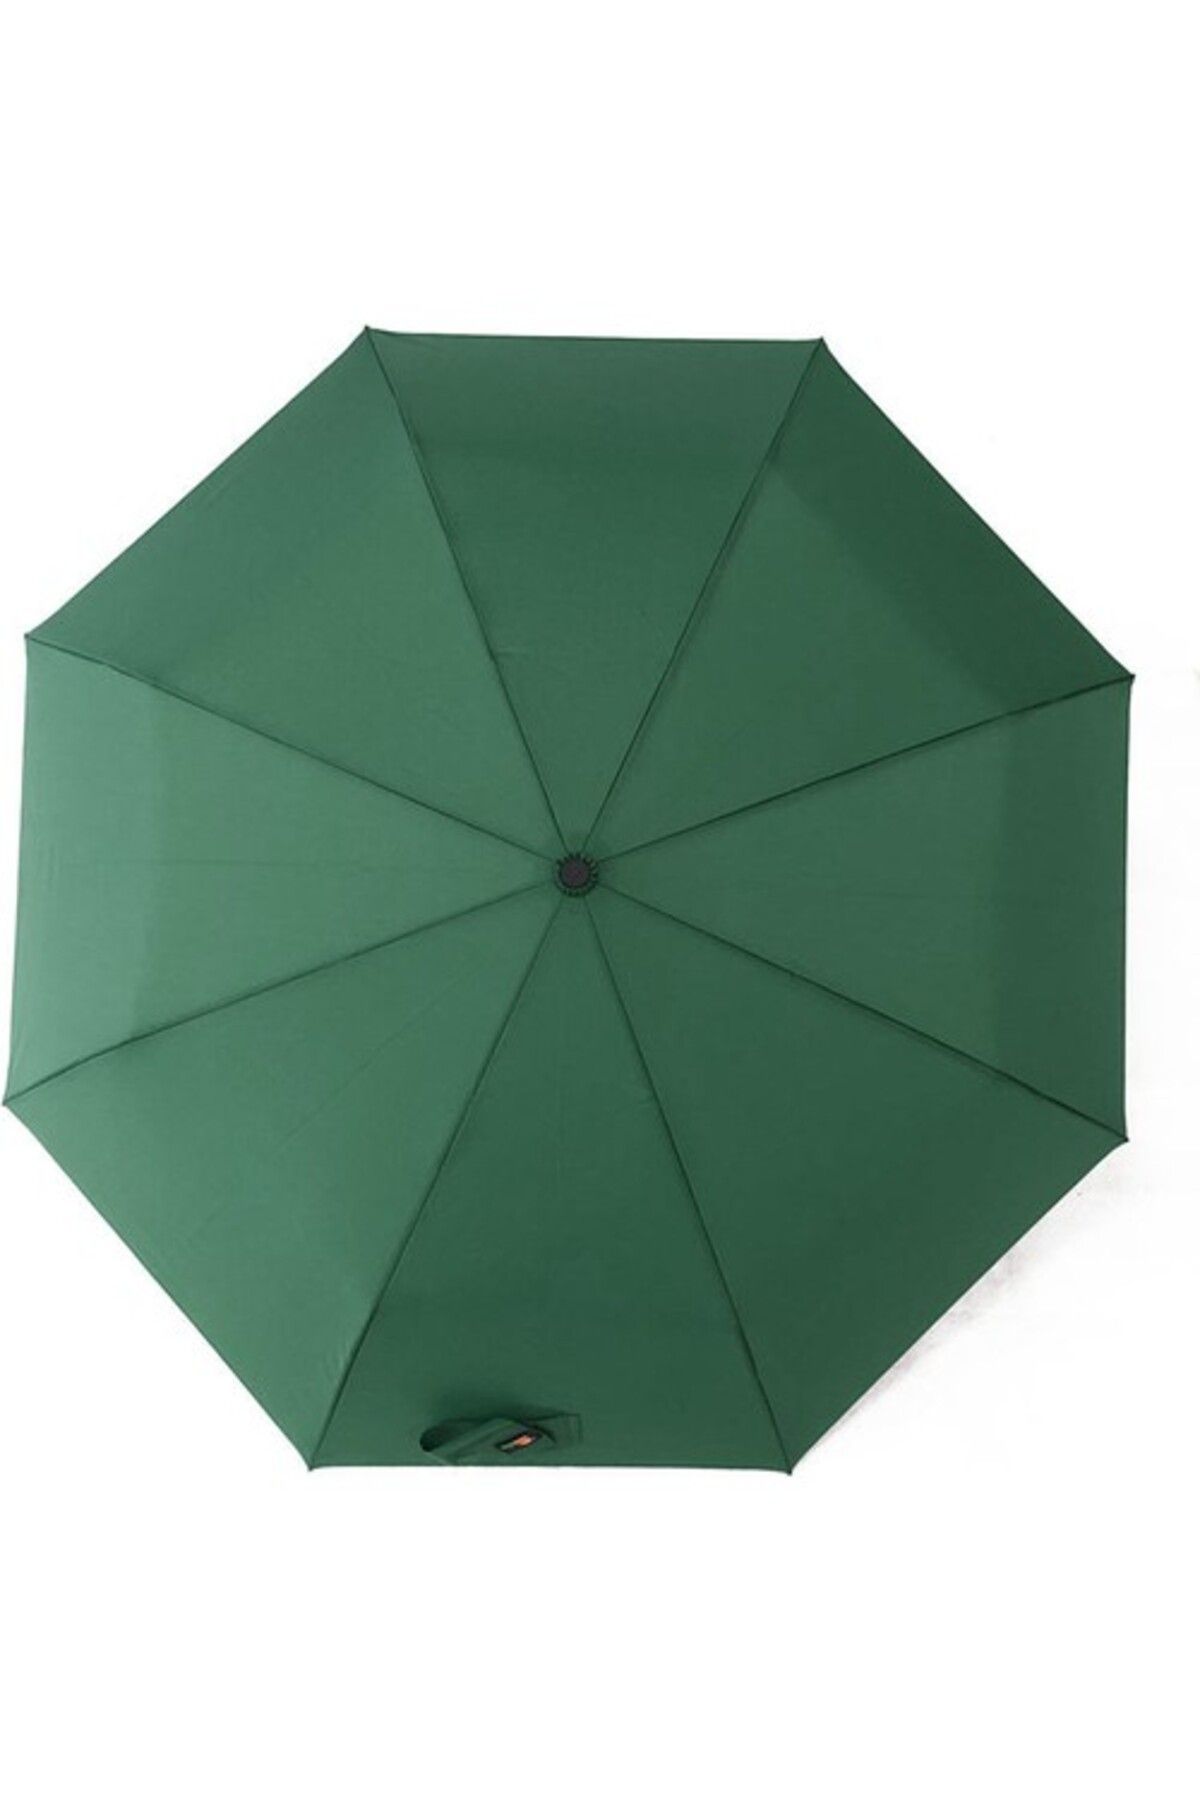 ELEVEN MARKETS Tam Otomatik Yeşil Erkek Şemsiyesi